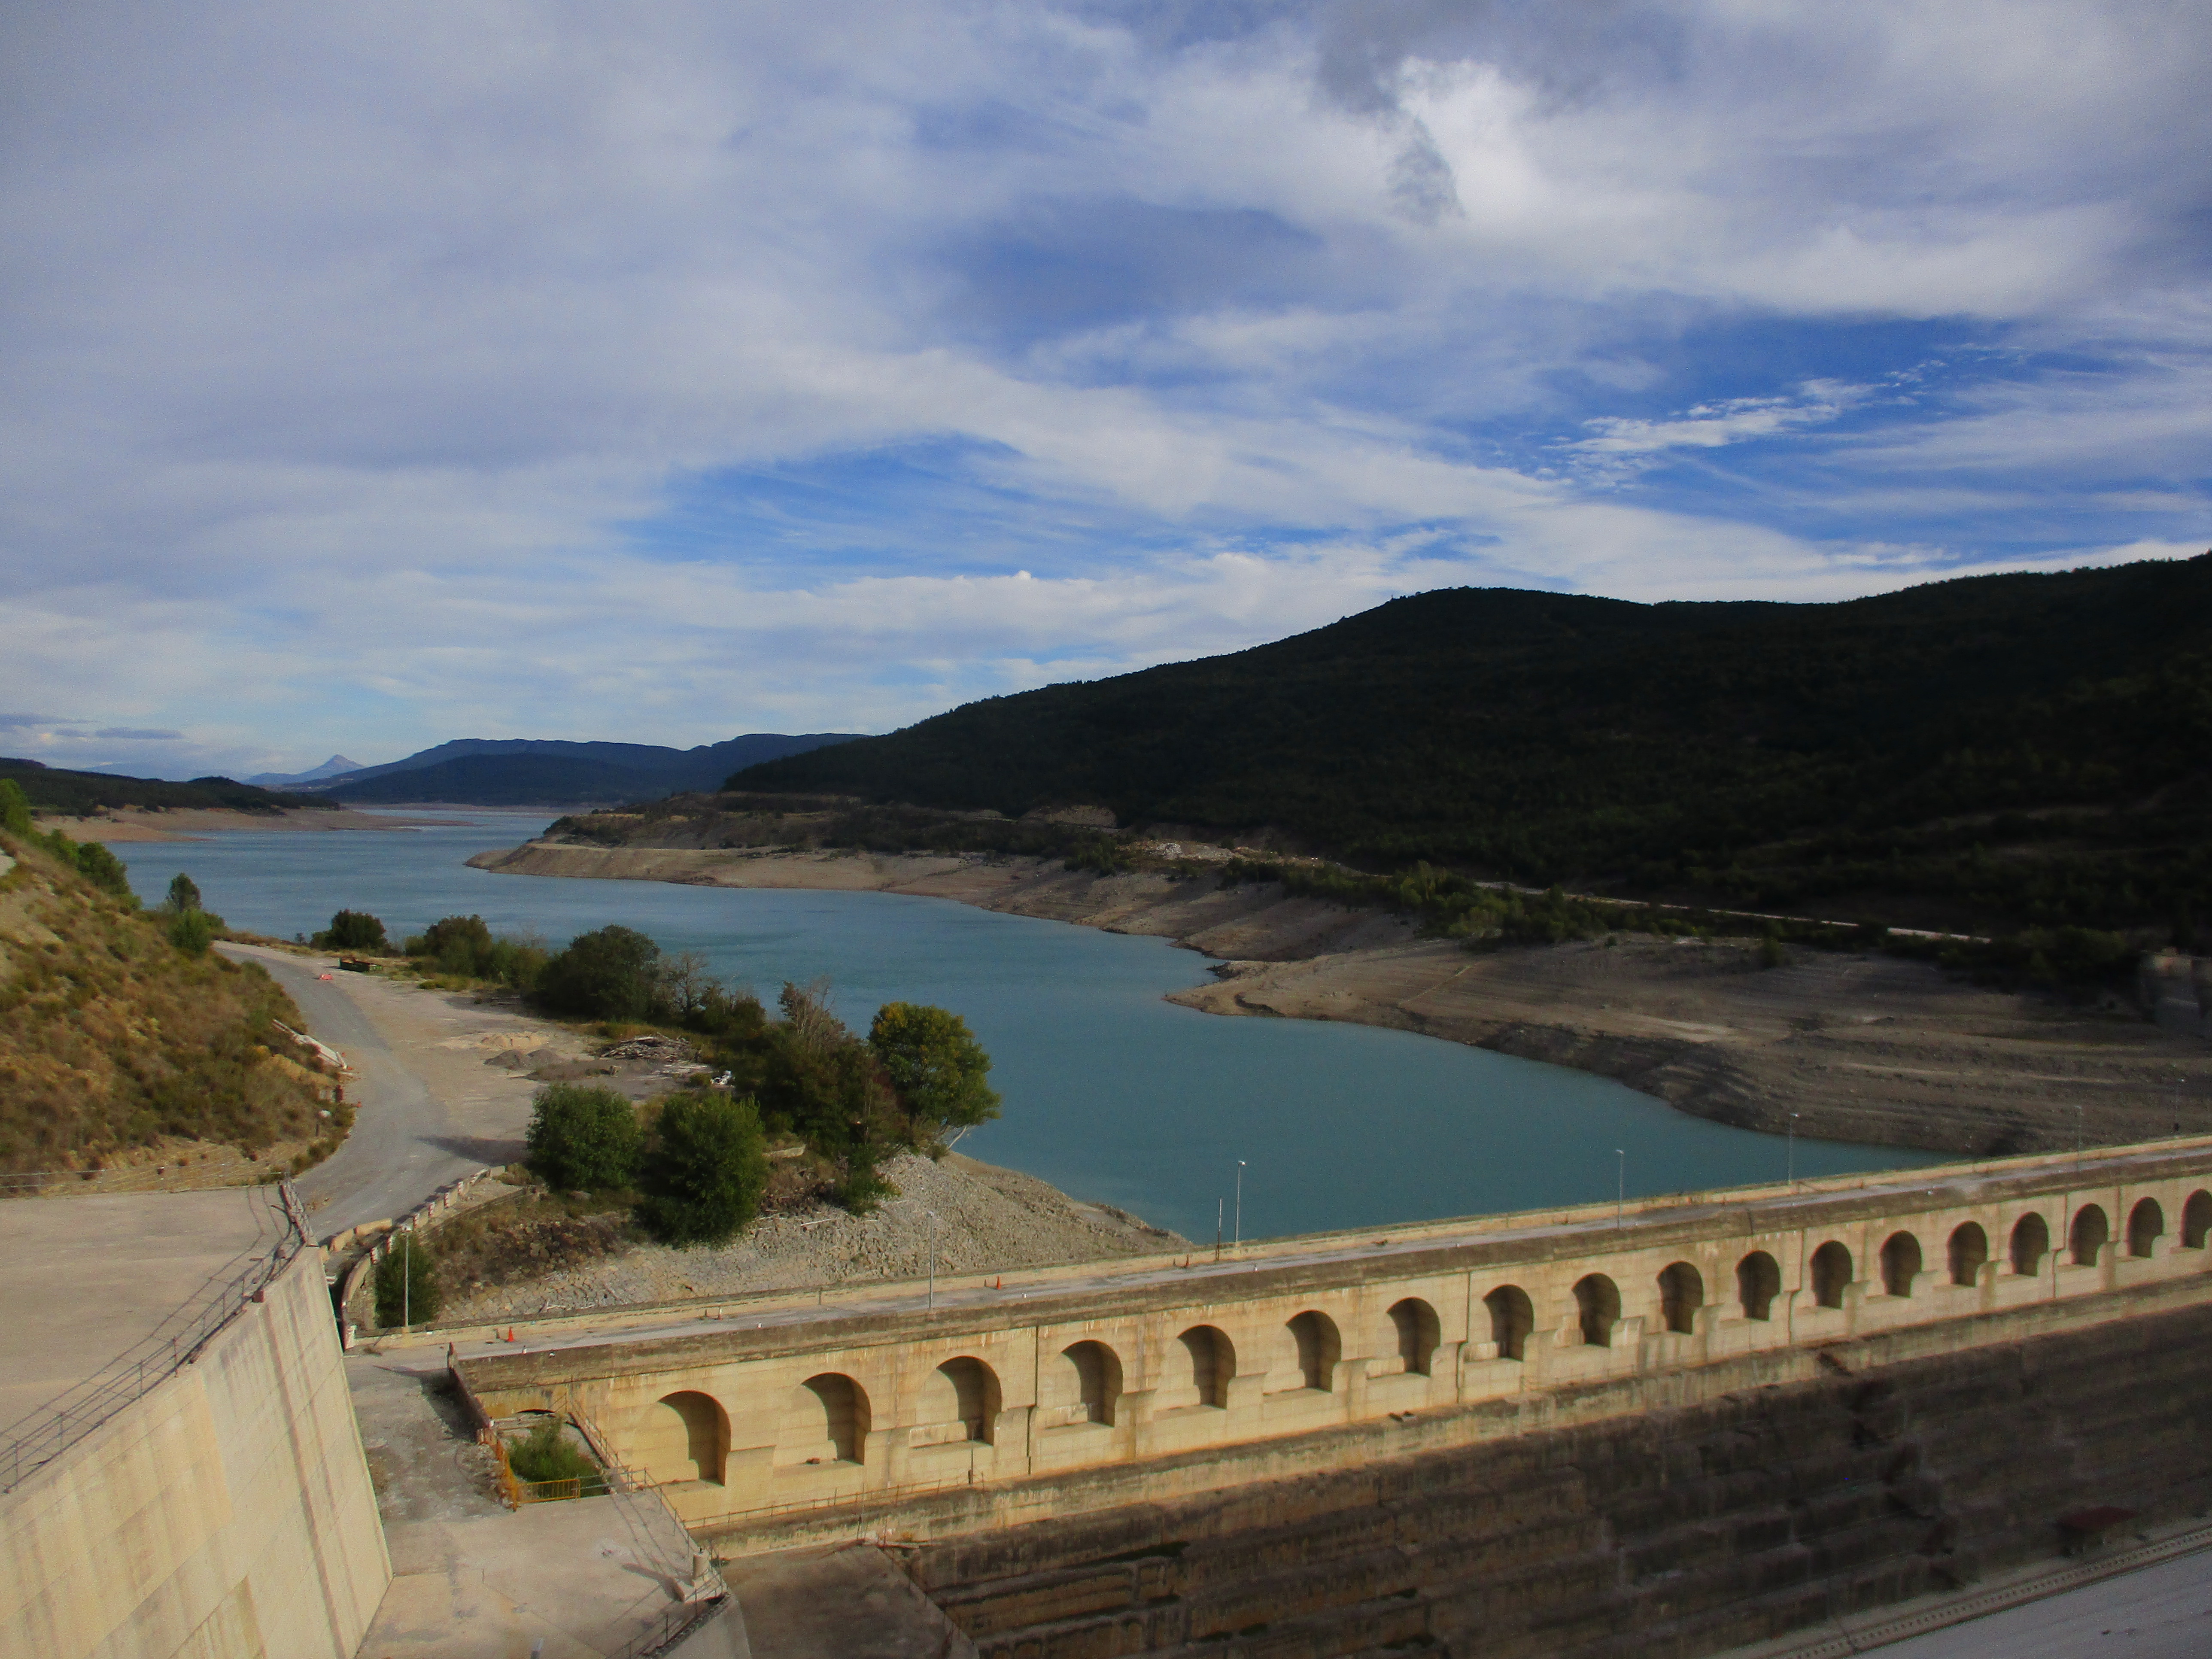 El año hidrológico 2020-2021 se cierra en la cuenca del Ebro con reservas algo inferiores a la media de los últimos 5 años por las menores precipitaciones